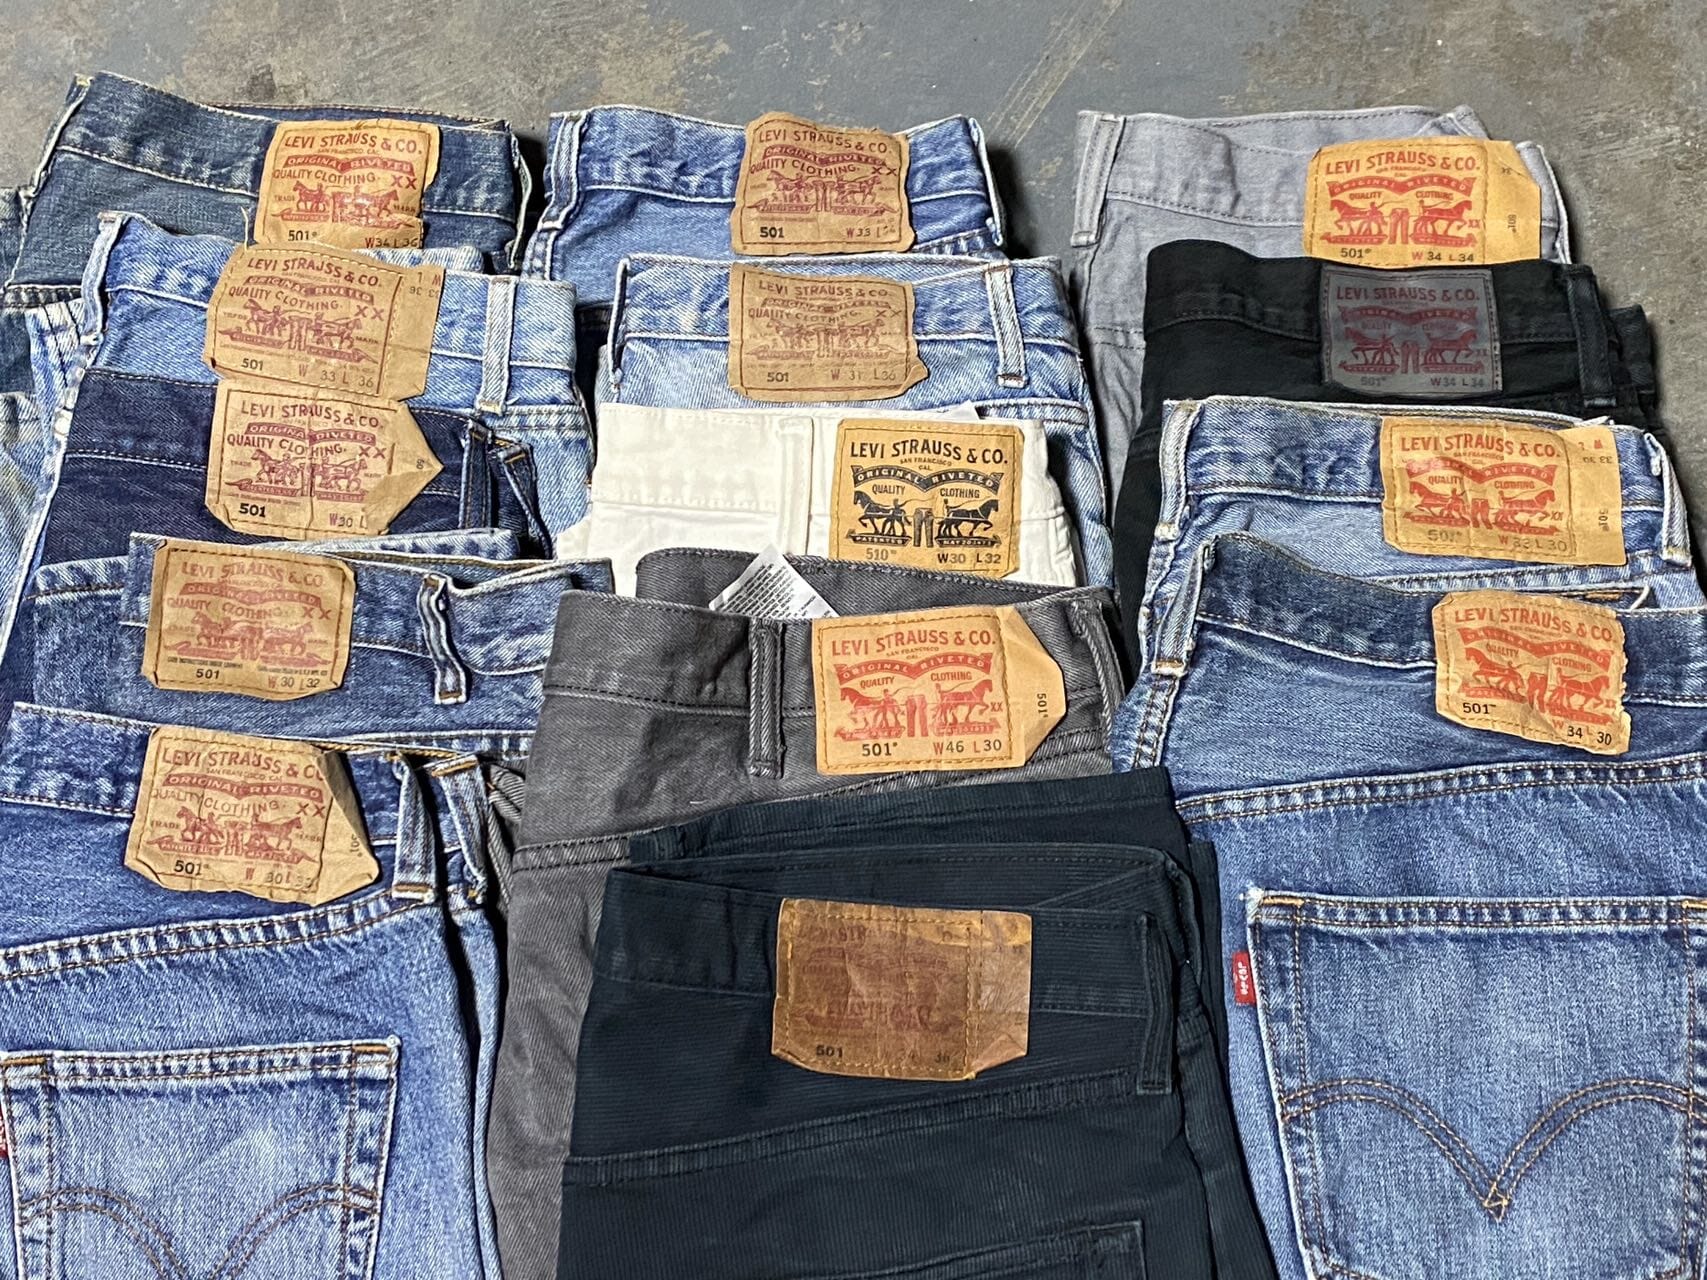 501 Levi's Denim Jeans Northern Pole Vintage Wholesale 